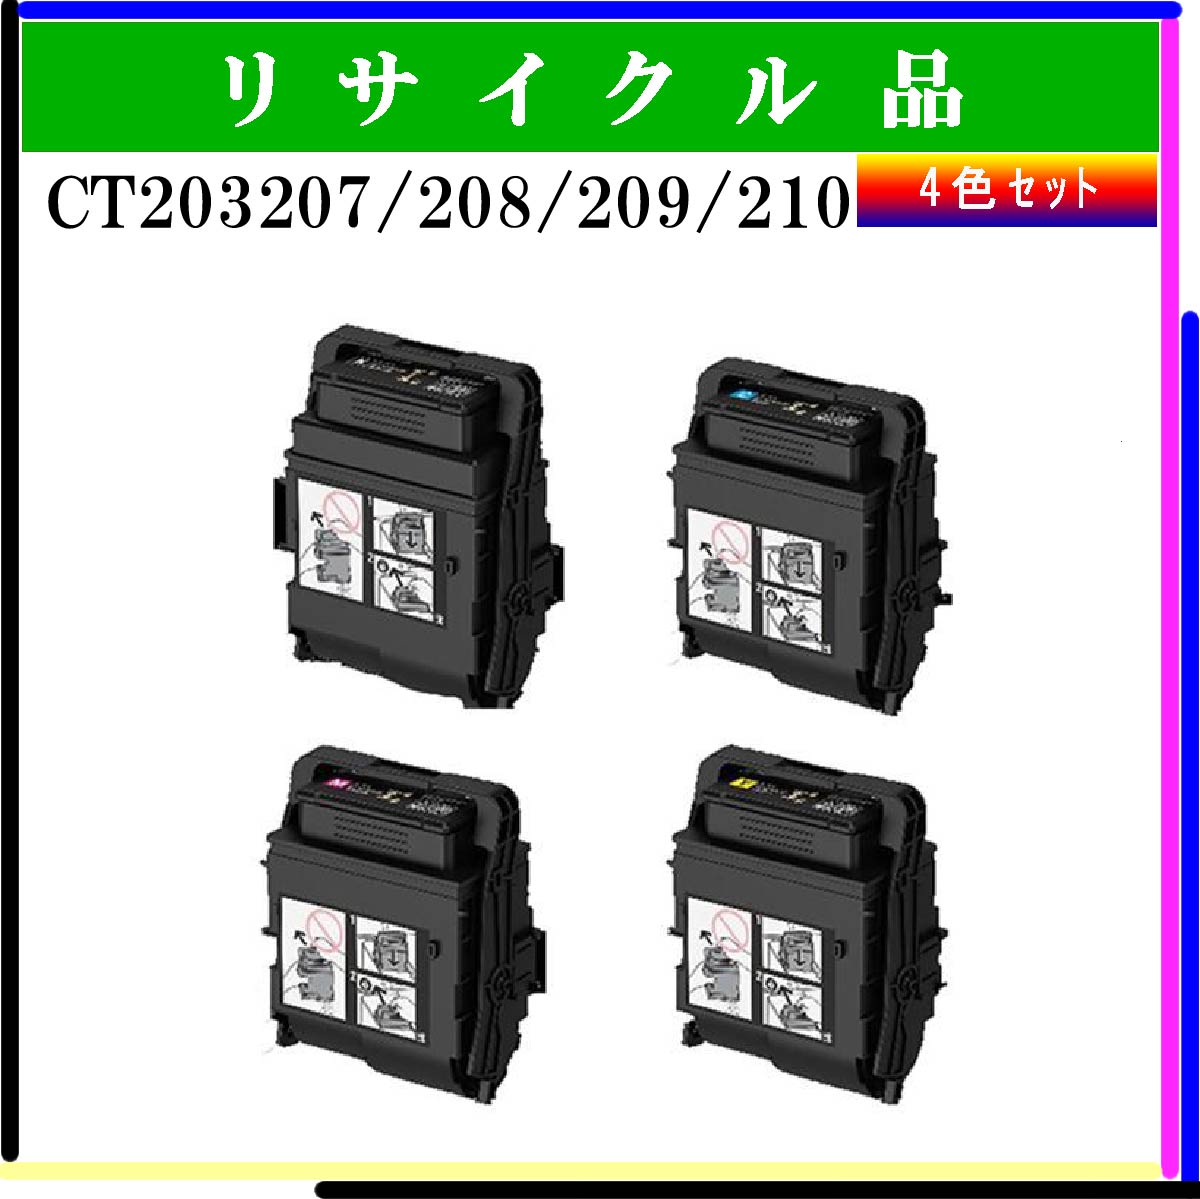 CT203207/208/209/210 (4色ｾｯﾄ)